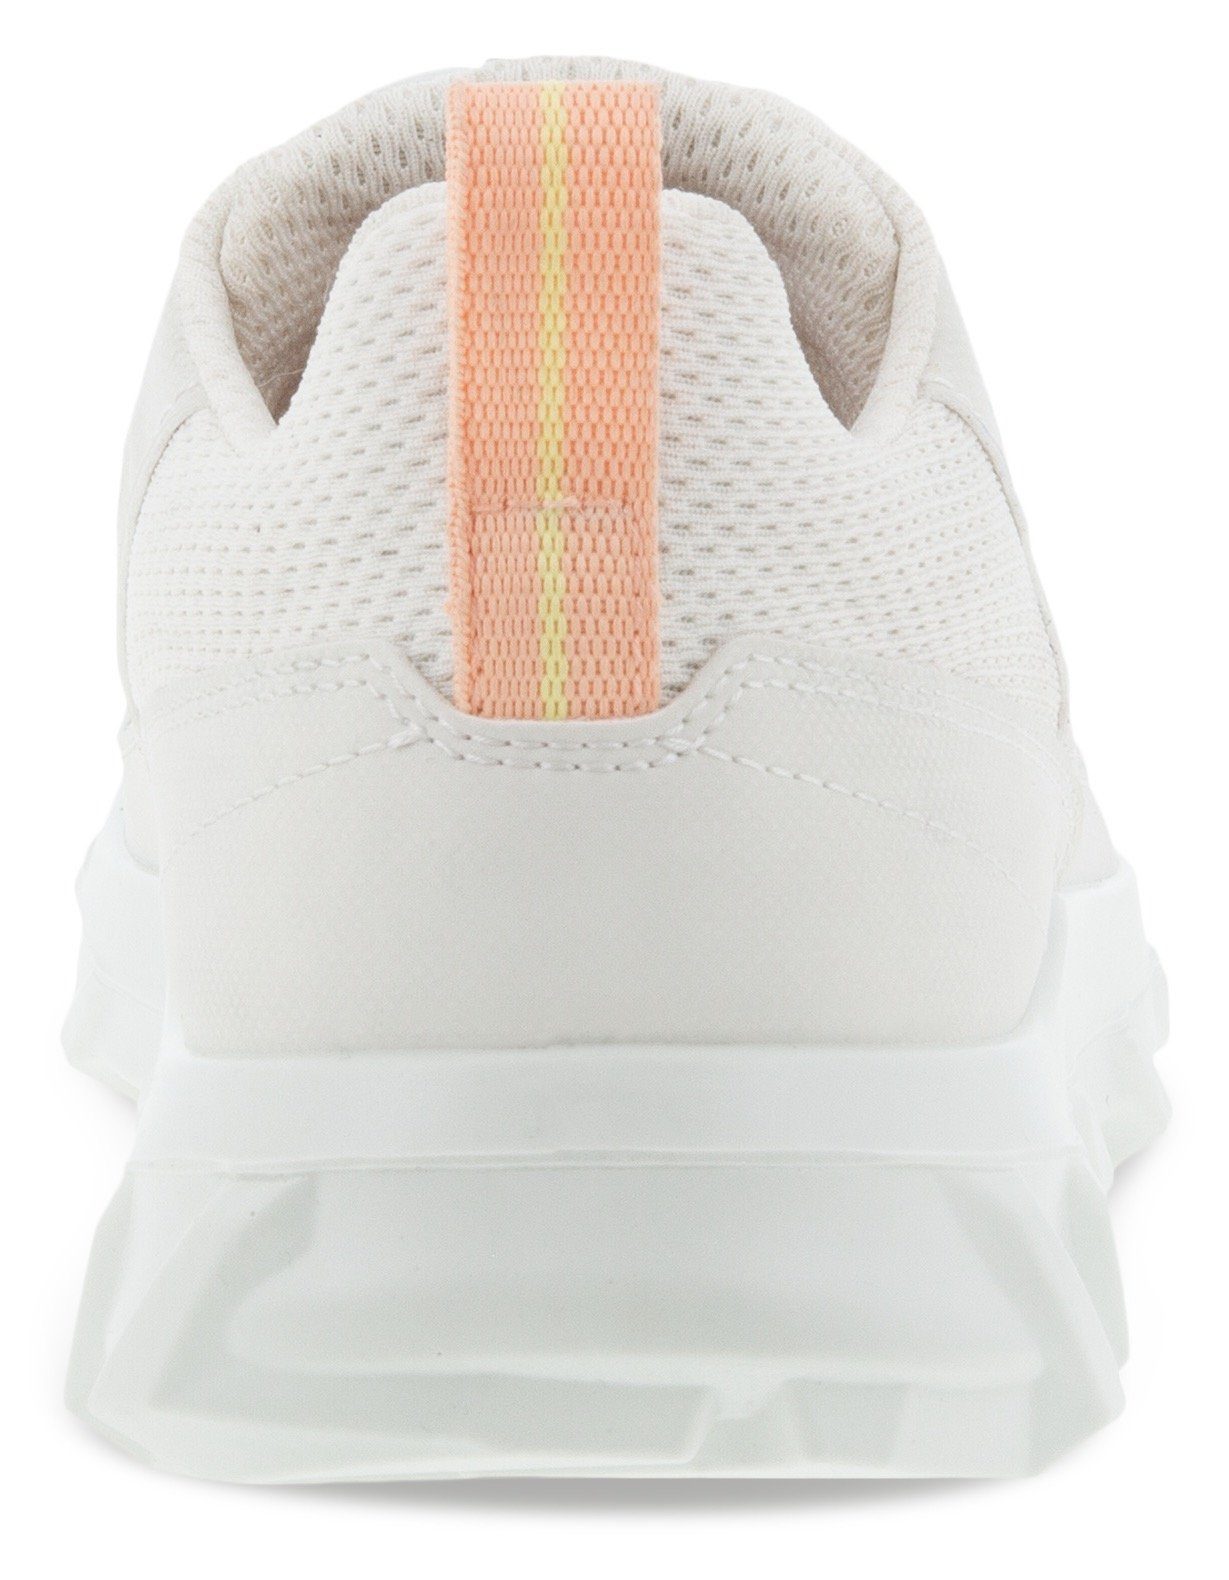 trittdämpfender MX Slip-On weiß Fluidform-Ausstattung mit ECCO Sneaker Ecco W